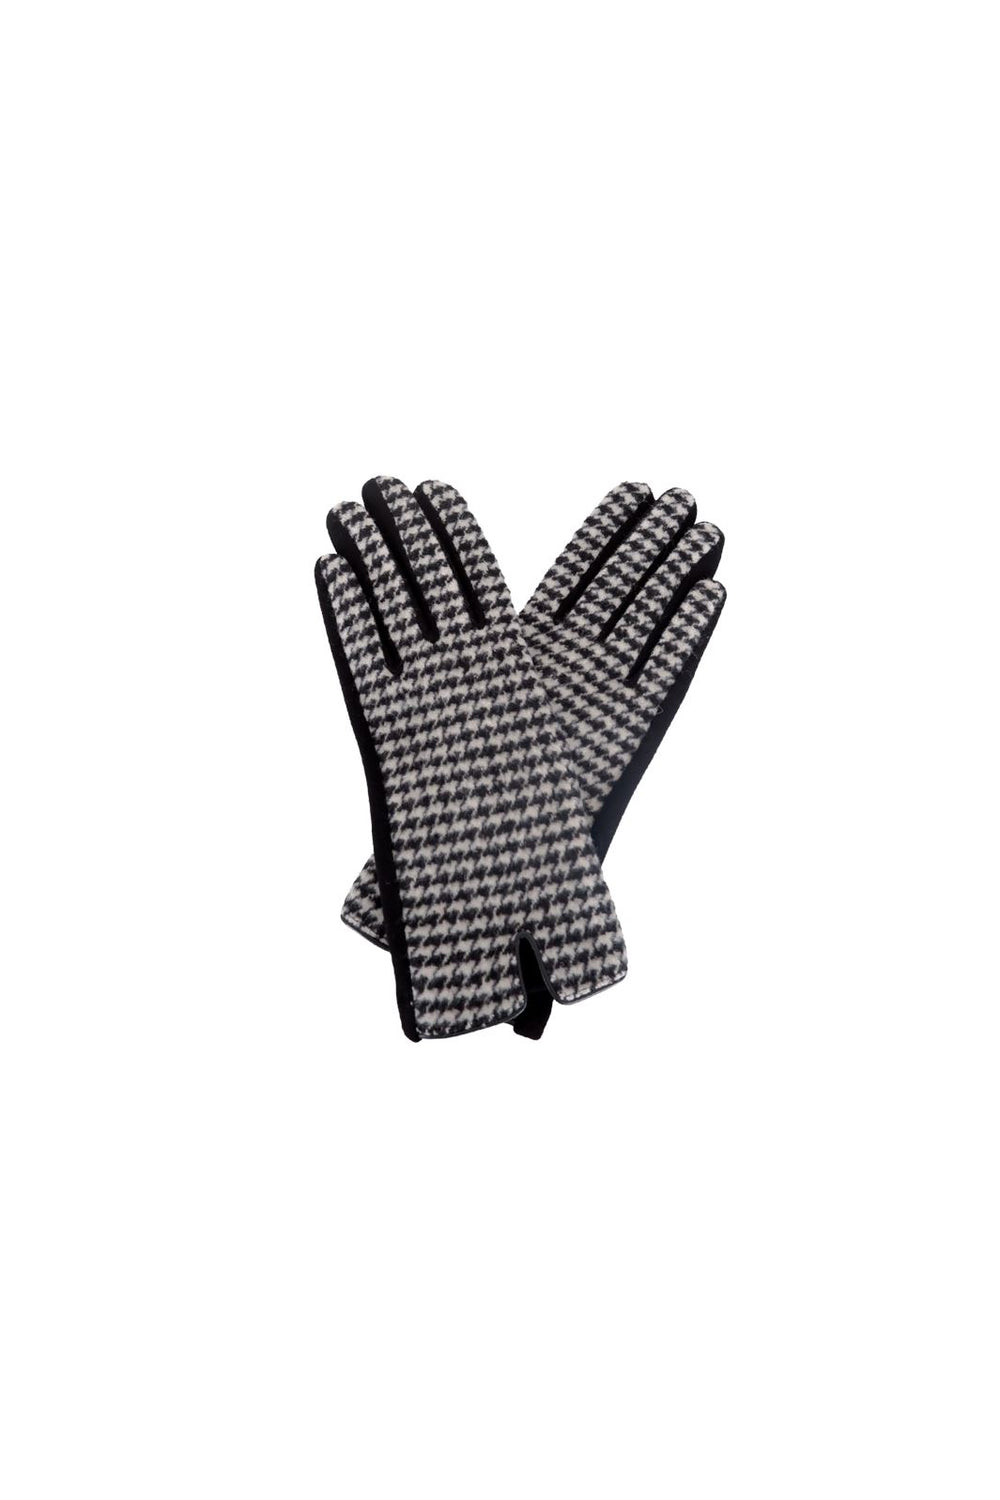 Black Colour - Bcmei Chekered Gloves - Black&White